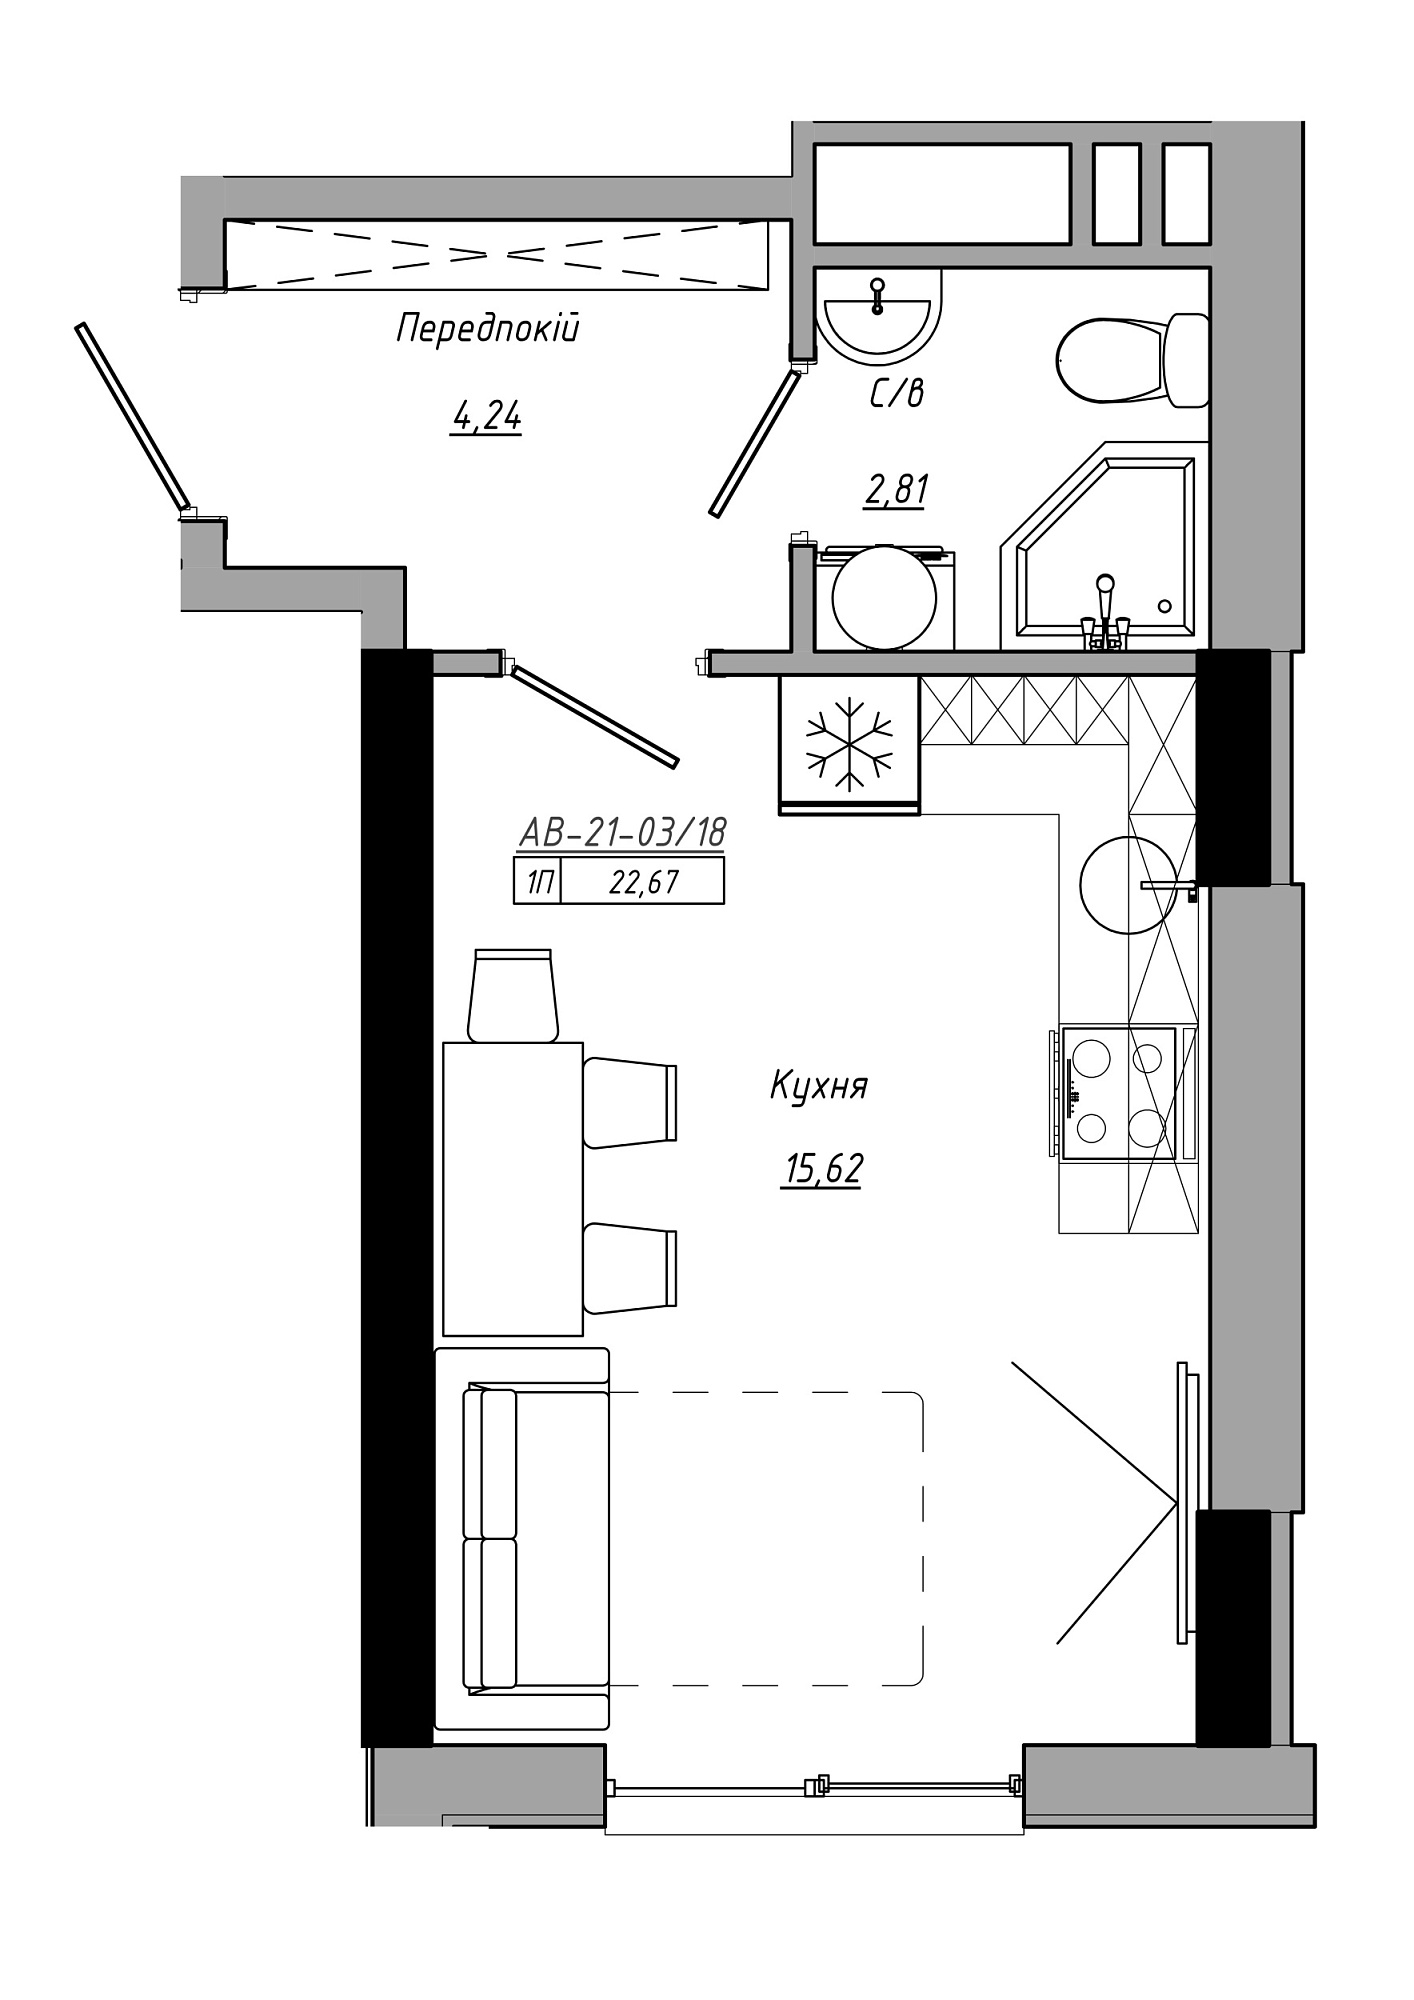 Планування Smart-квартира площею 22.67м2, AB-21-03/00018.